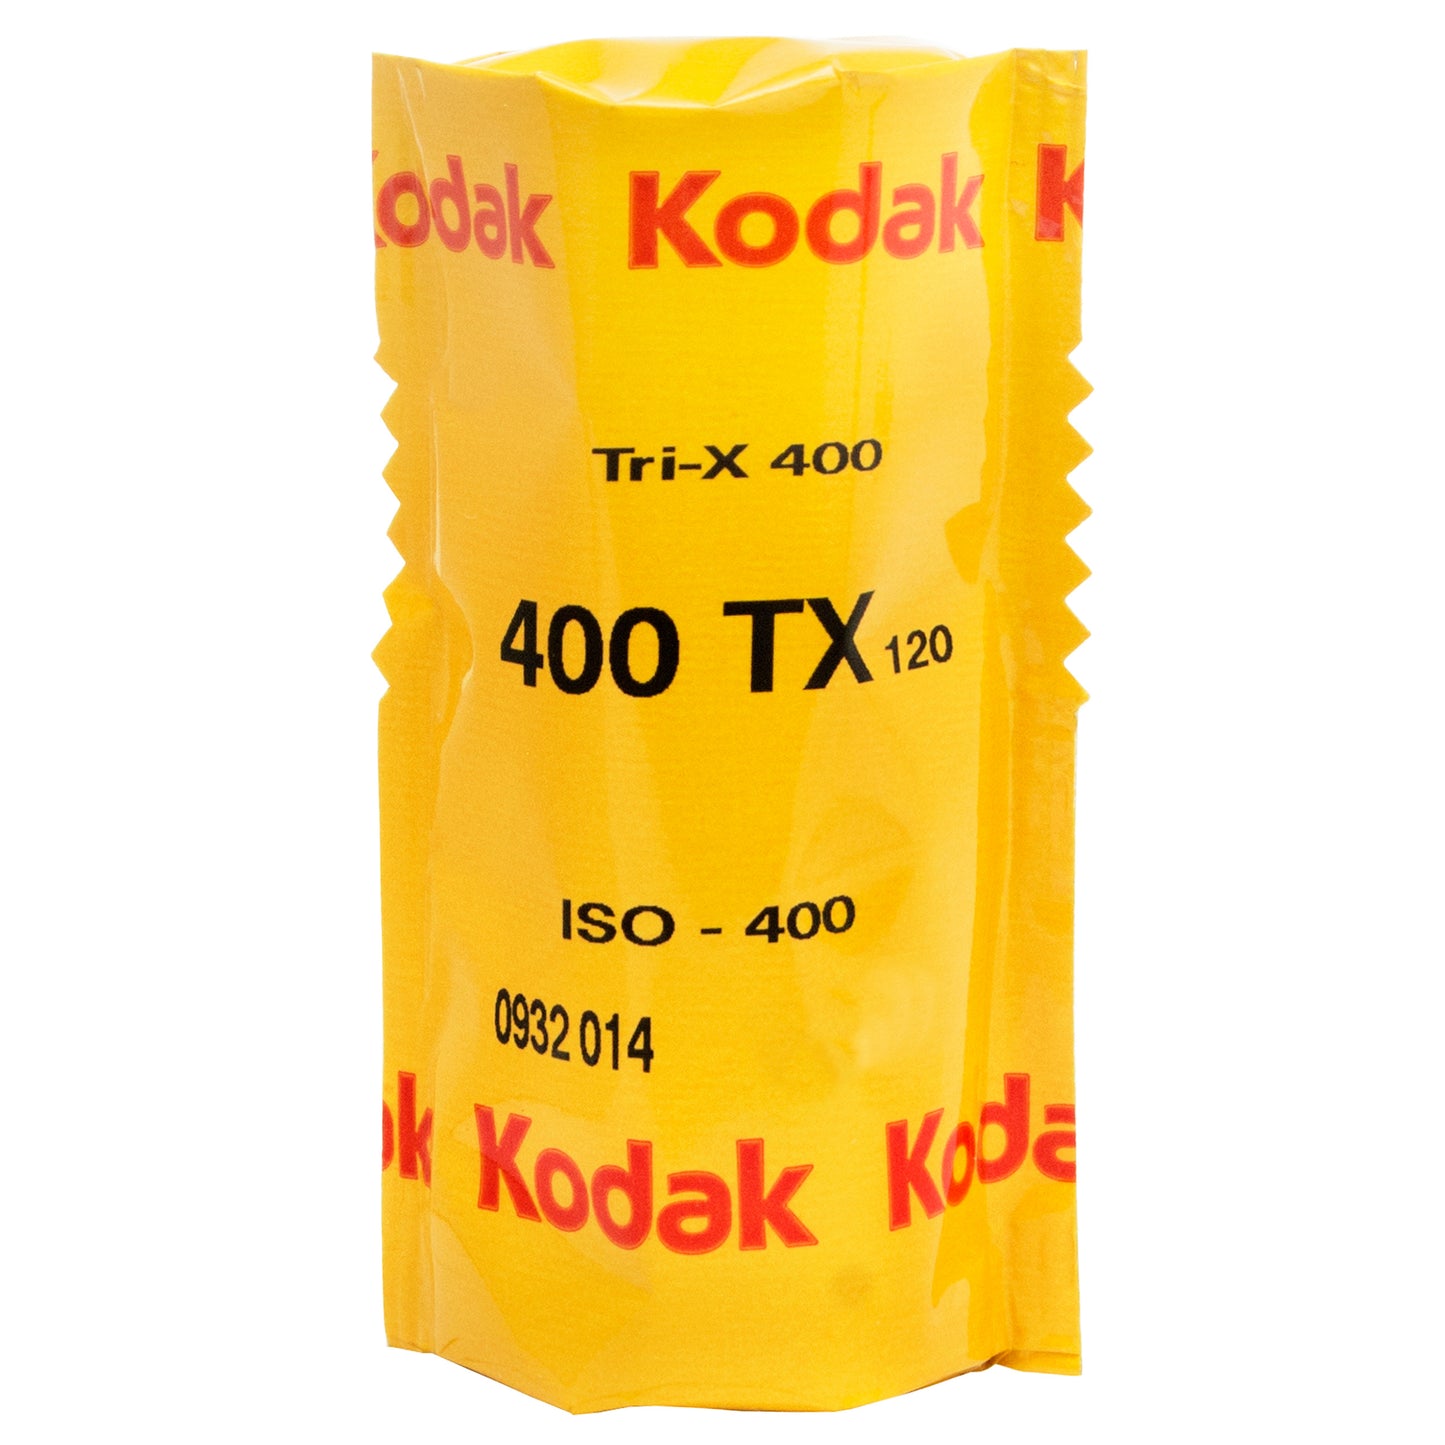 Kodak Tri-X 400, 120.